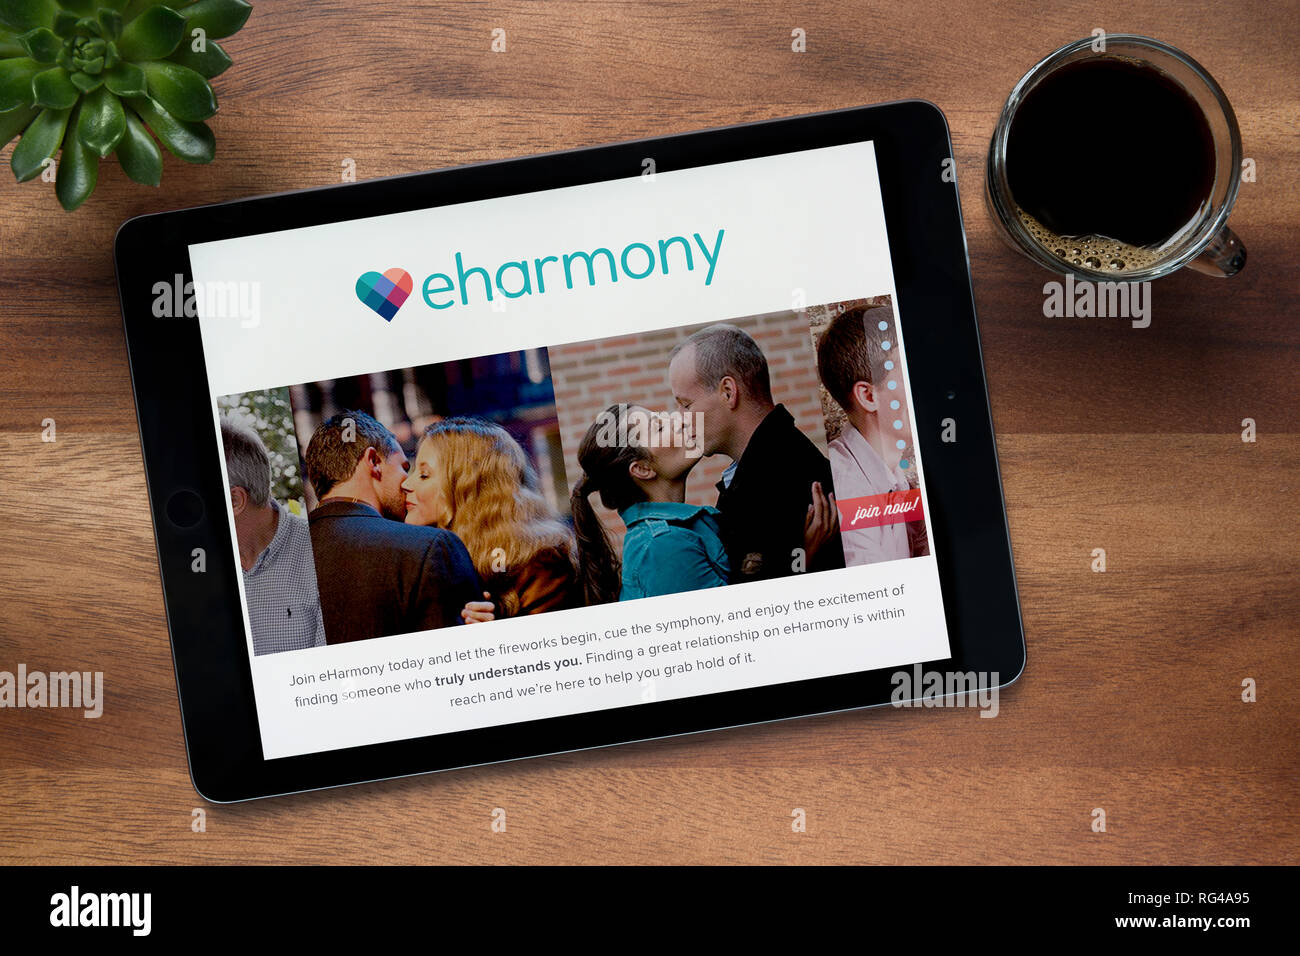 Die Website von eharmony ist auf einem iPad Tablet gesehen, auf einer hölzernen Tisch zusammen mit einem Espresso und einem Haus Anlage (nur redaktionelle Nutzung). Stockfoto